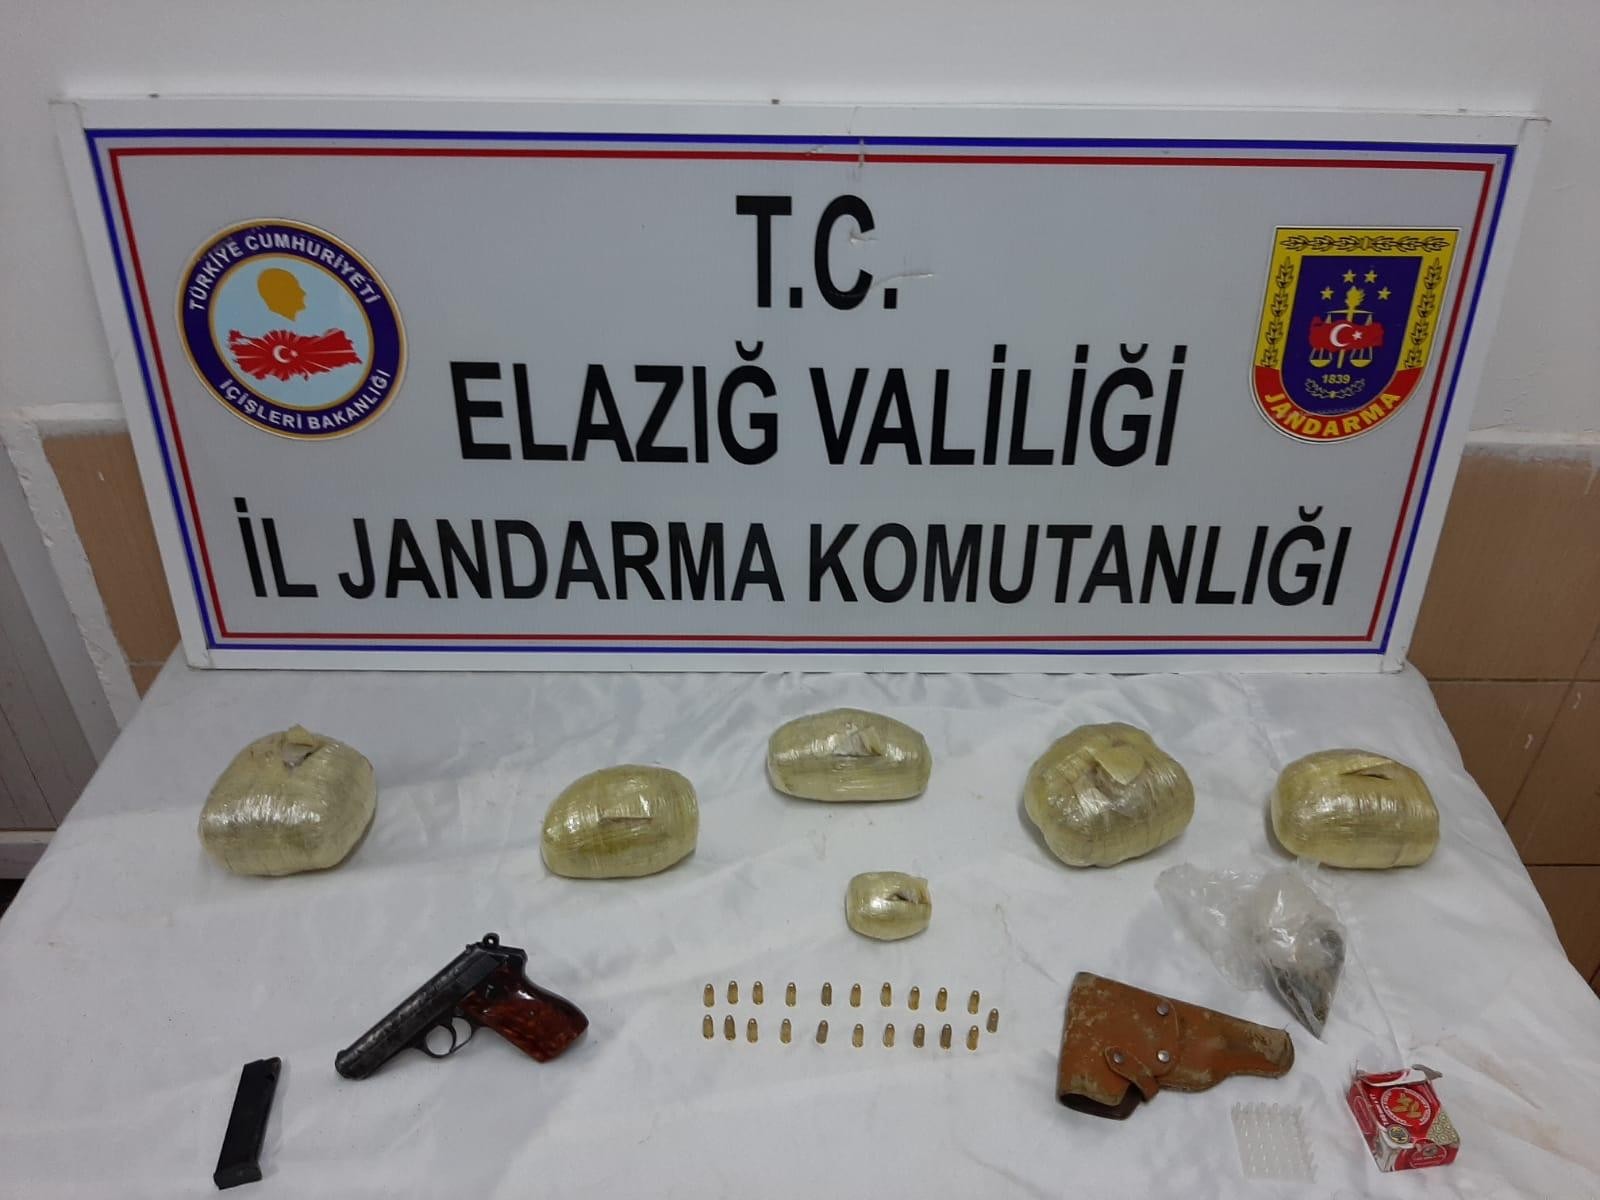 Elazığ’da uyuşturucu operasyonu: 2 şüpheli yakalandı #elazig